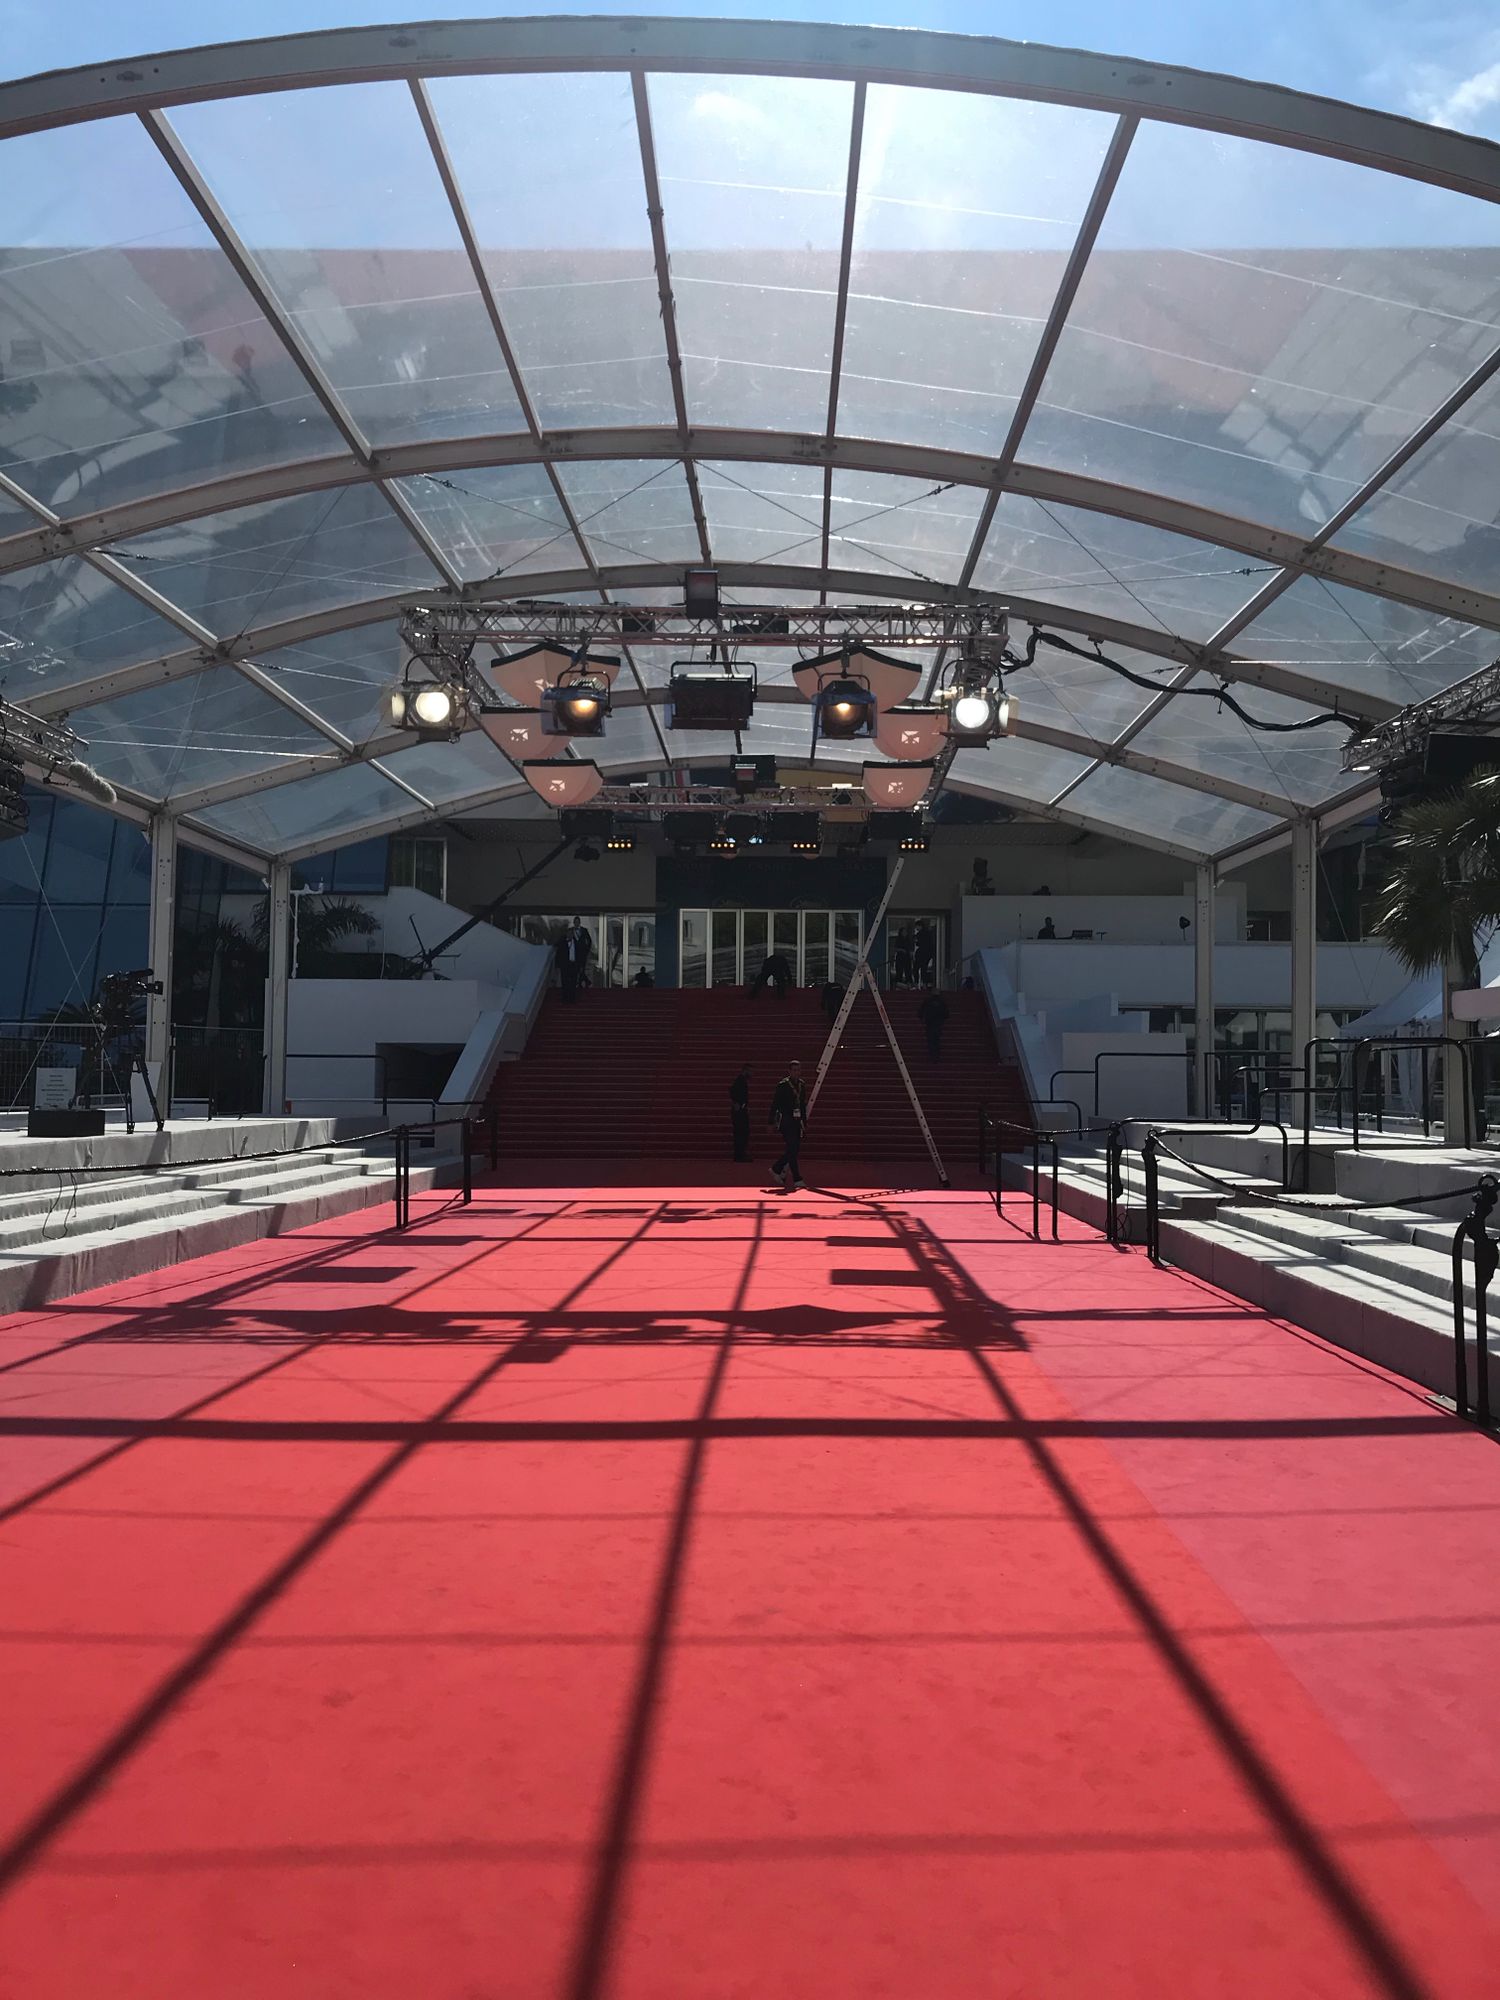 13/04/22 : Le Festival de Cannes dévoilera sa sélection officielle demain